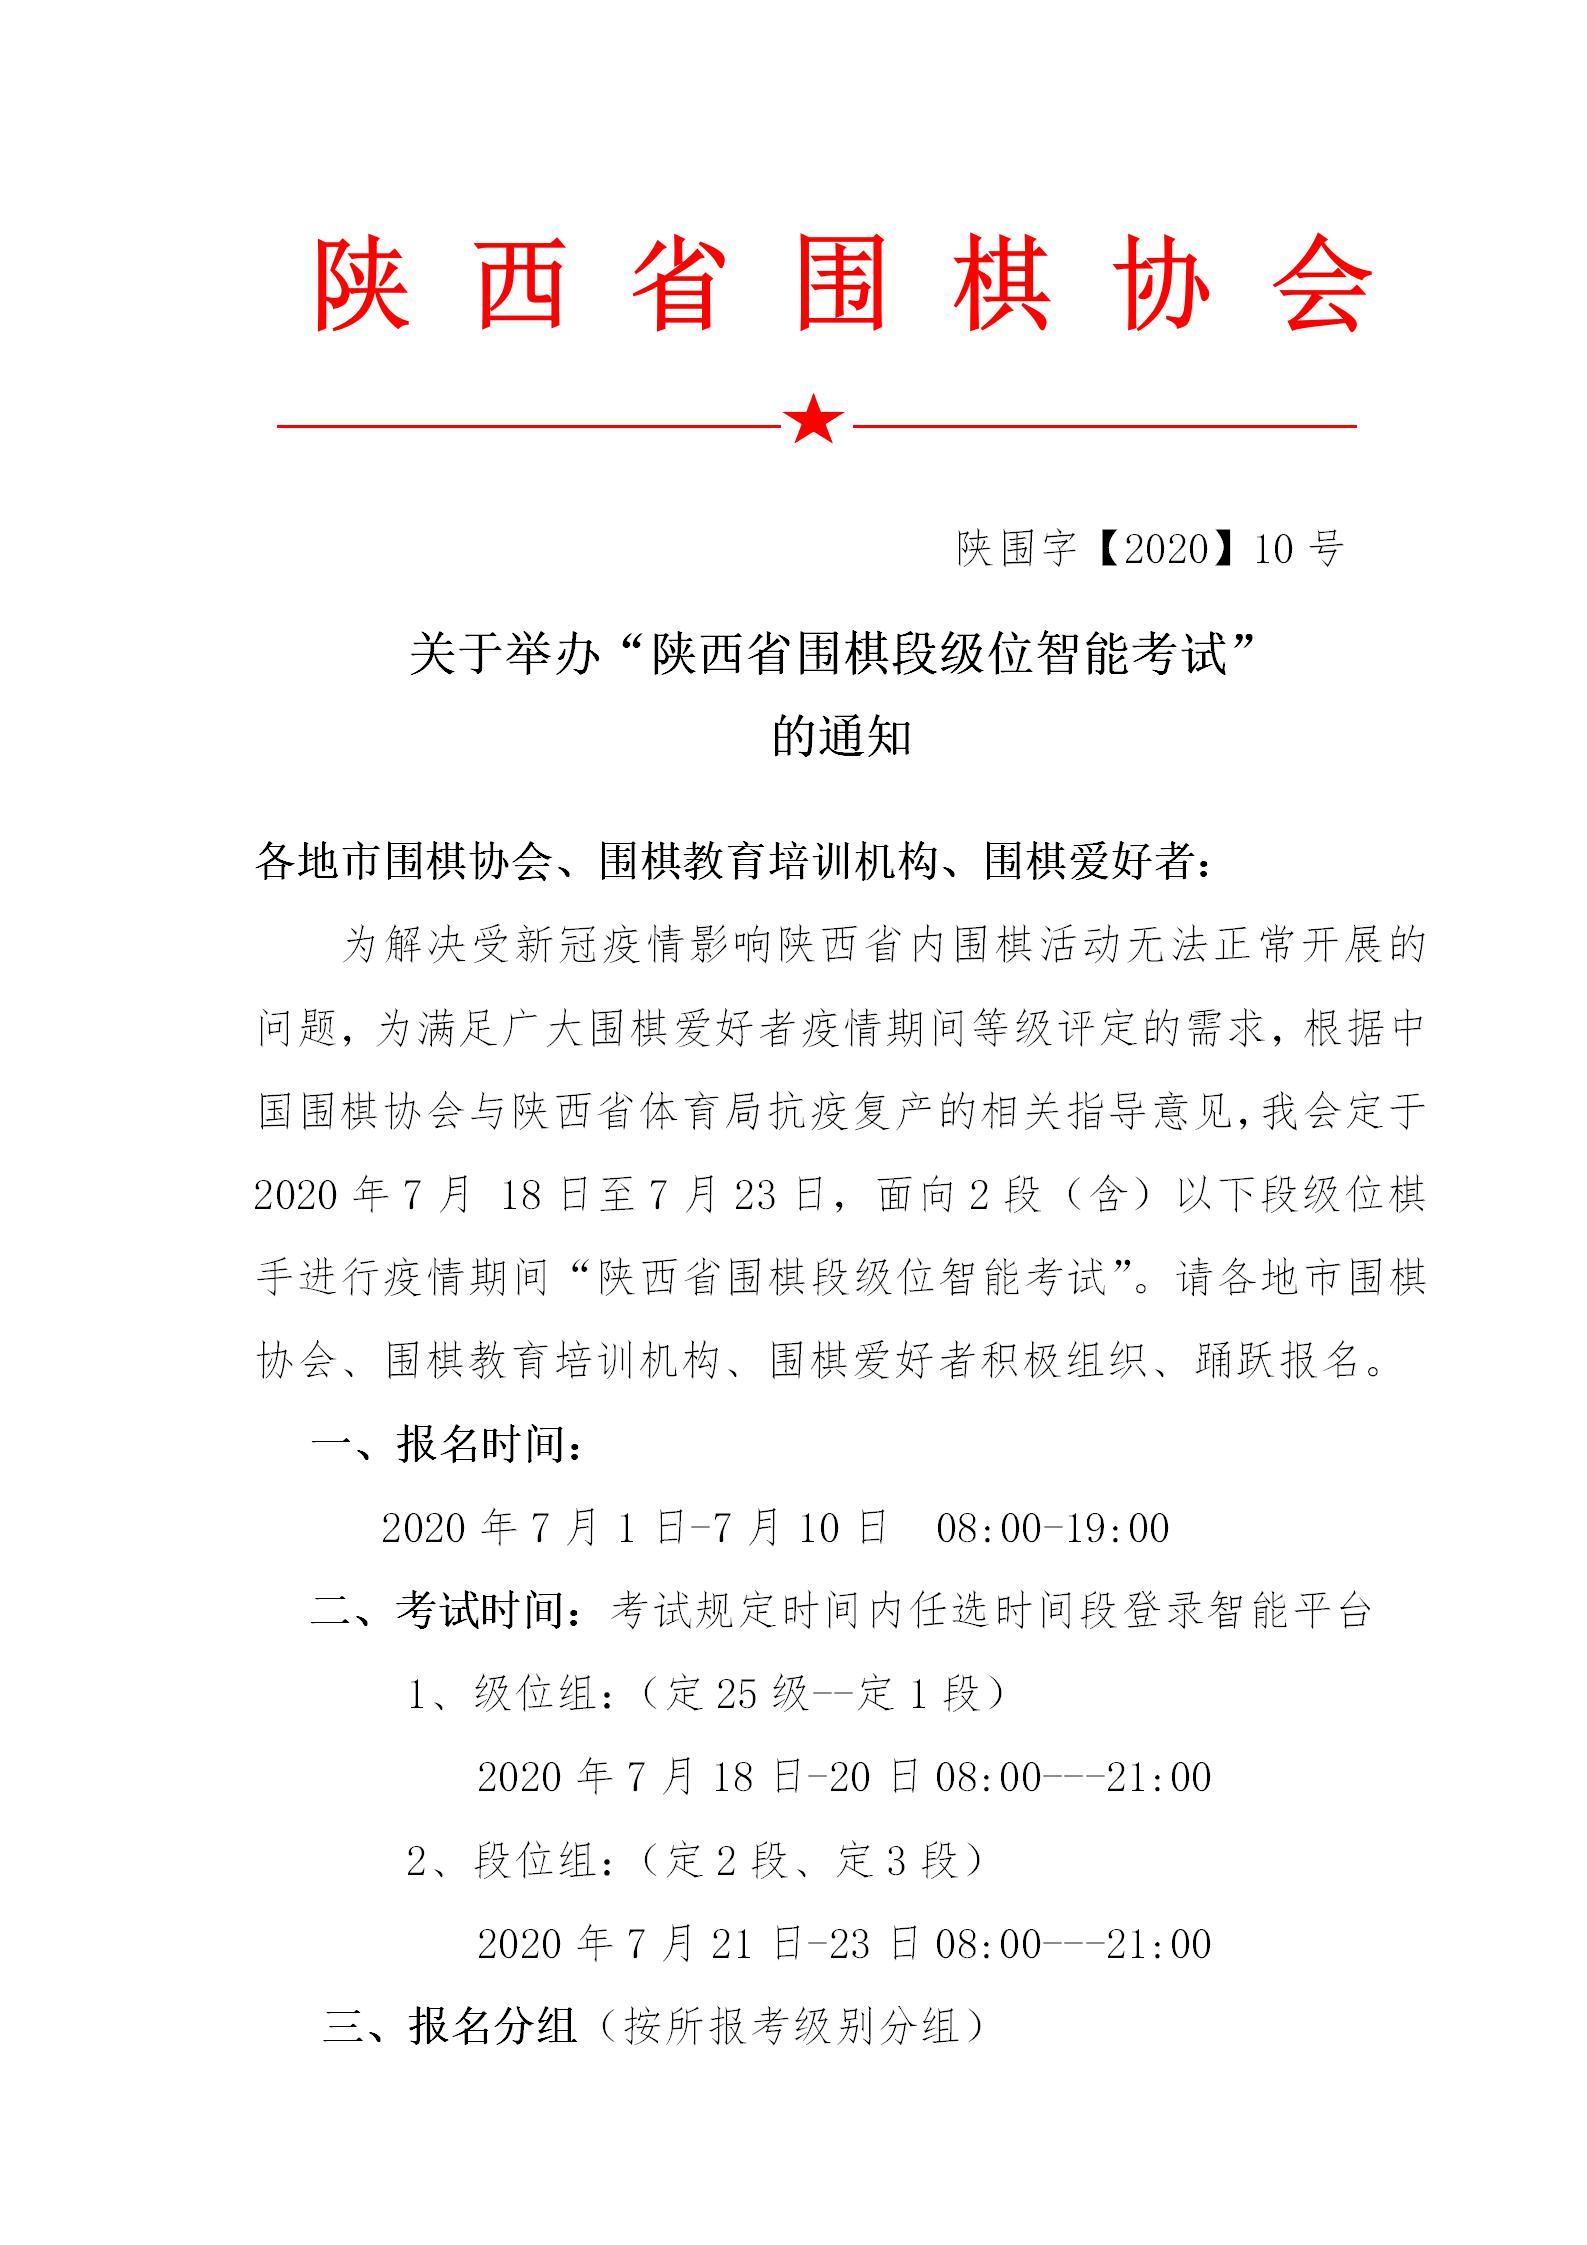 关于举办“陕西省围棋段级位智能考试”的通知0616(1)_01.jpg